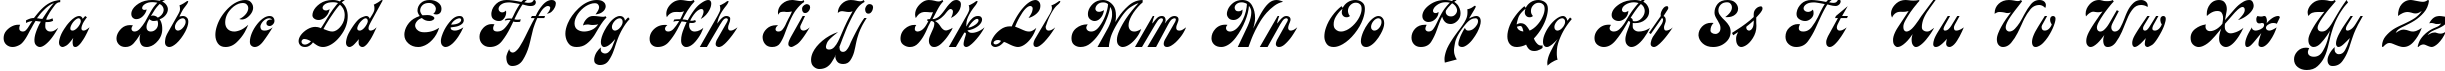 Пример написания английского алфавита шрифтом Astra